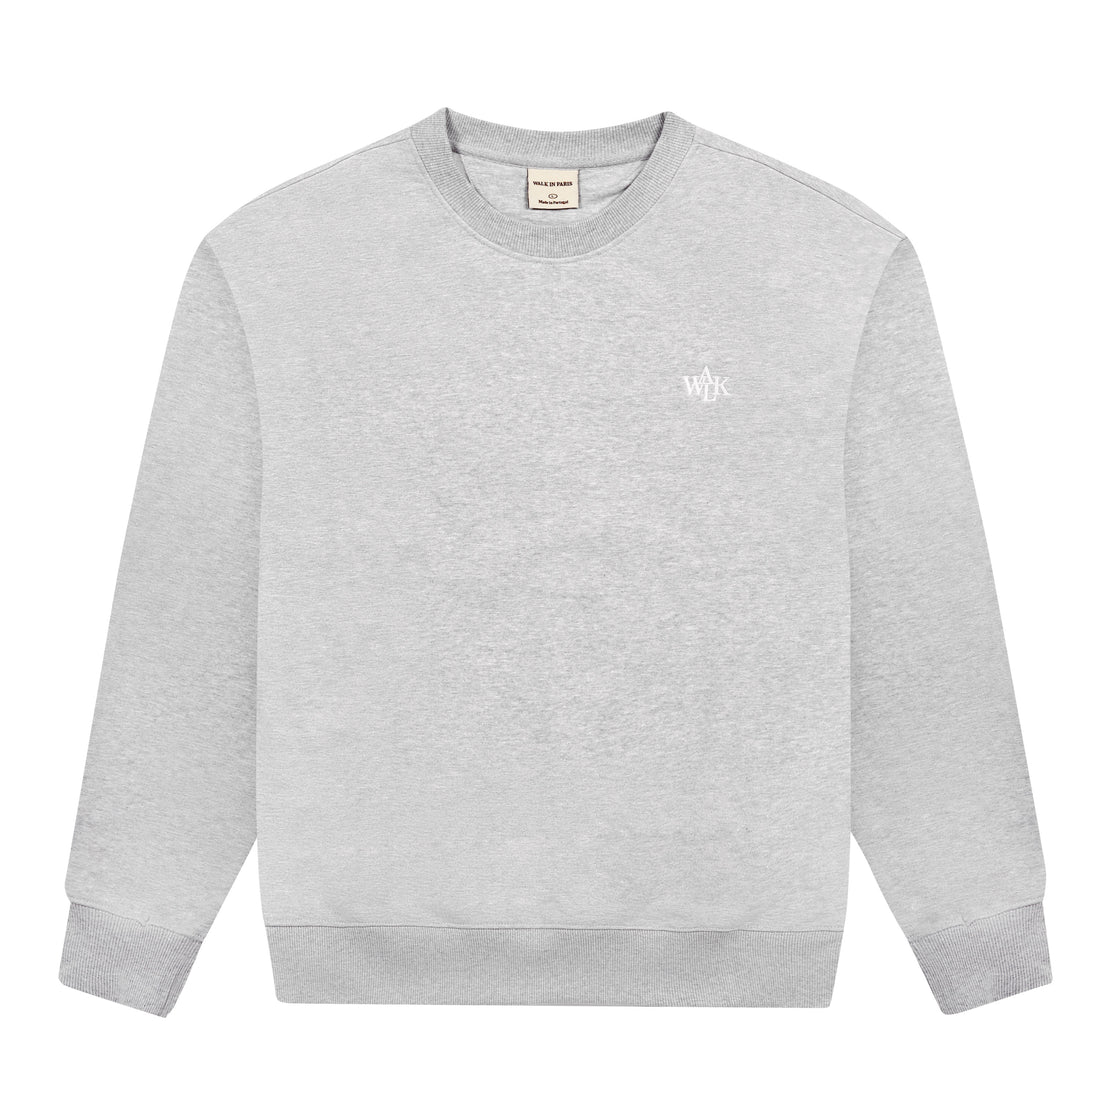 Le sweatshirt gris chiné